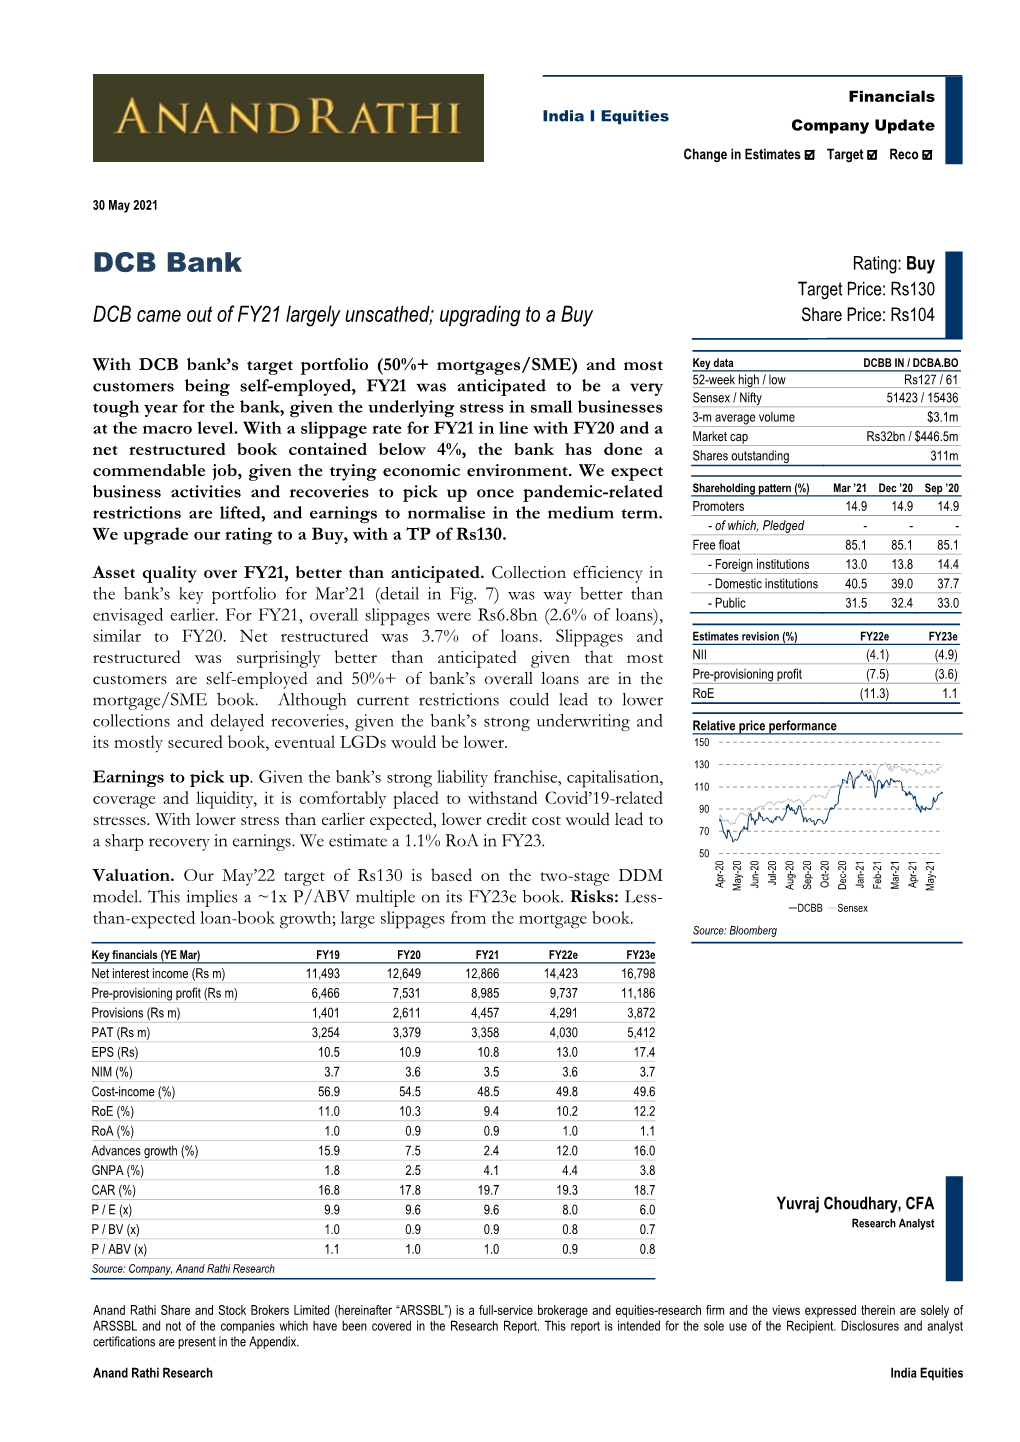 DCB Bank Target Price: Rs130